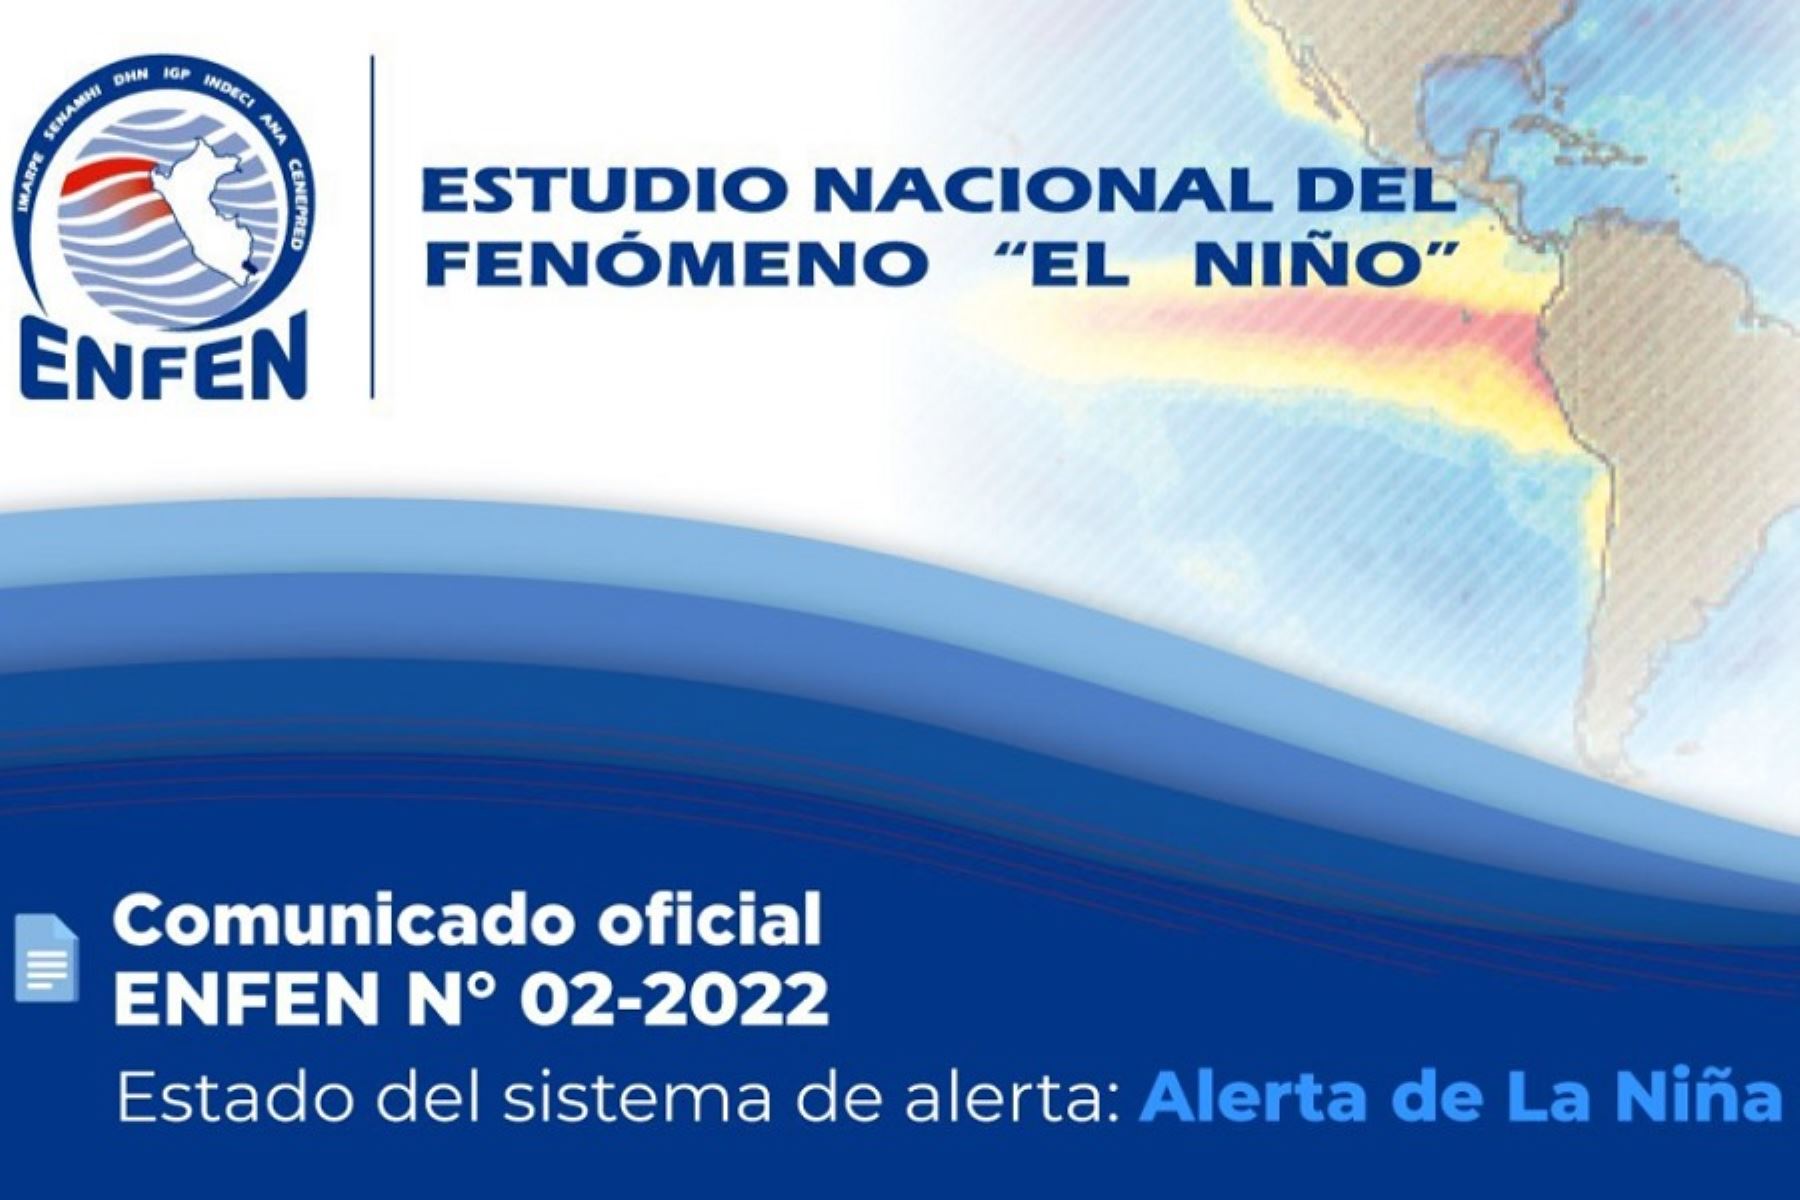 La Comisión Multisectorial del Estudio Nacional del Fenómeno El Niño (Enfen) informó que el evento La Niña se mantendrá con magnitud débil en la zona norte y centro del mar peruano durante este mes, debido a que persisten anomalías negativas de la temperatura superficial del mar.